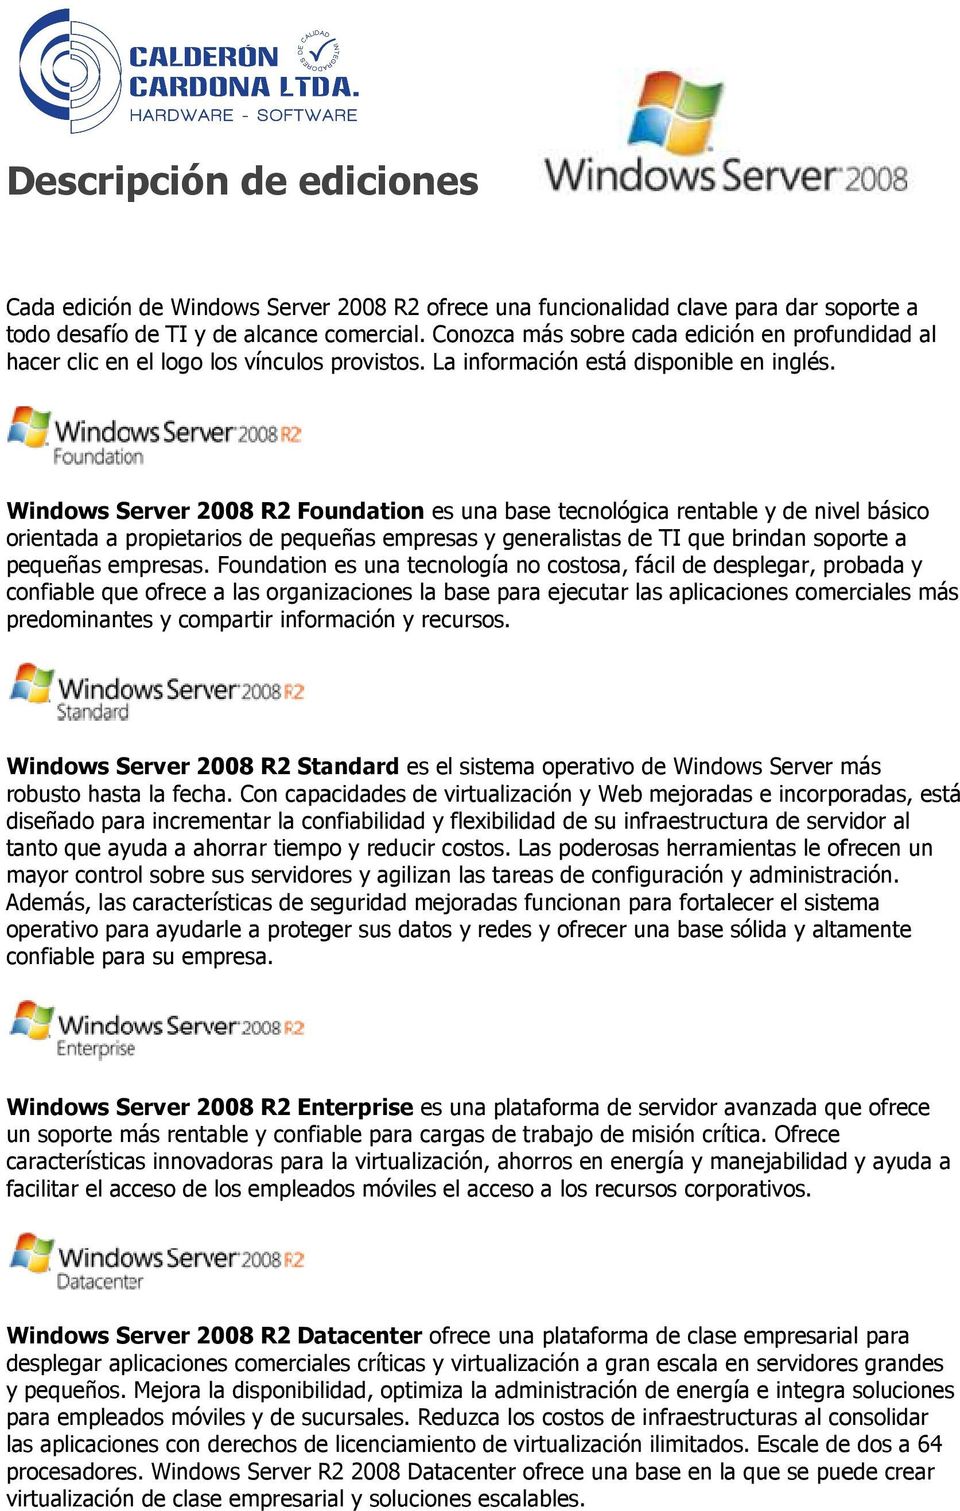 Windows Server 2008 R2 Foundation es una base tecnológica rentable y de nivel básico orientada a propietarios de pequeñas empresas y generalistas de TI que brindan soporte a pequeñas empresas.